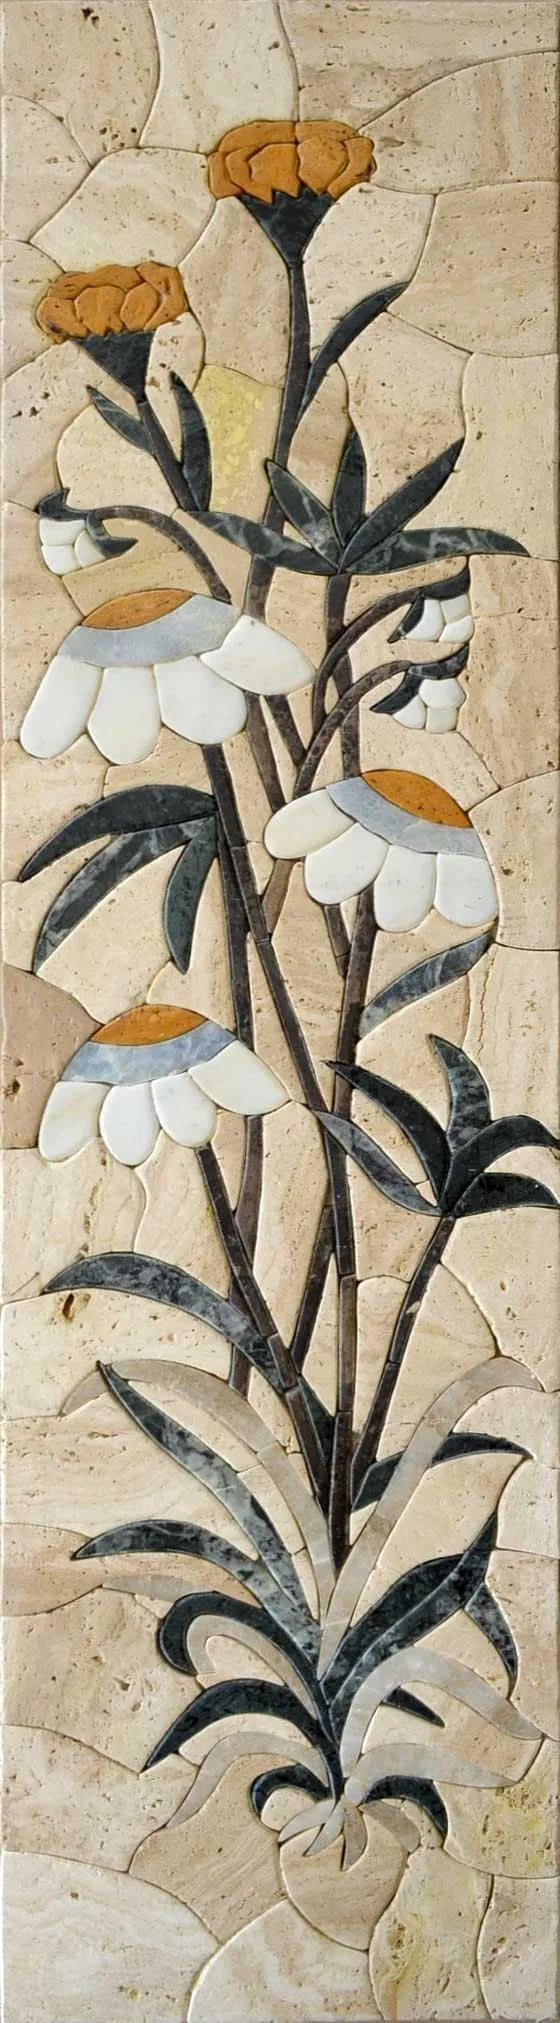 Flori - Arte em mosaico de pedra de flores | mosaico